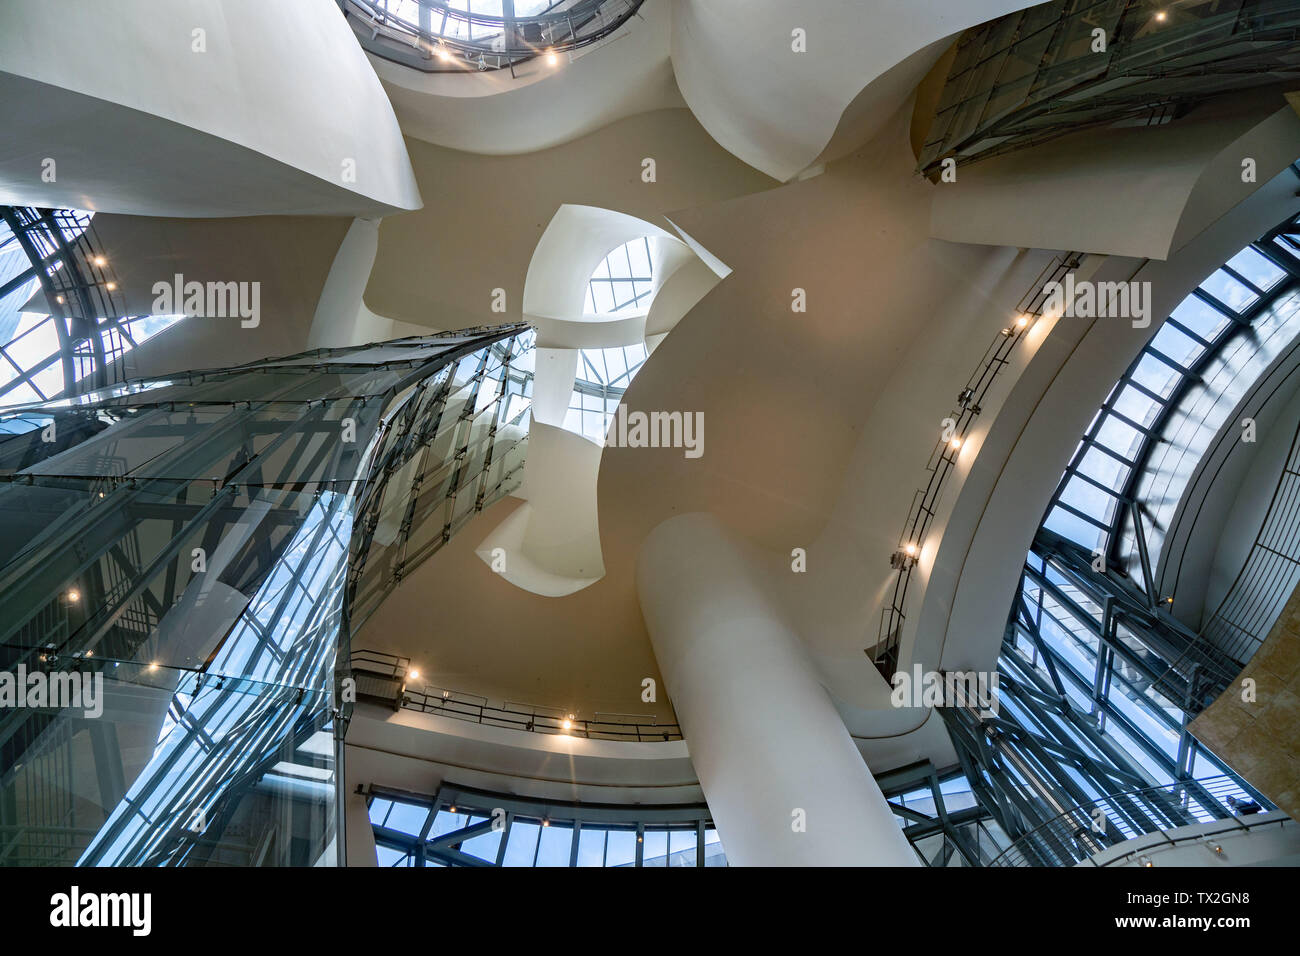 Bilbao, Spagna. Il 23 giugno, 2019. Vista interna del Museo Guggenheim di Bilbao. Il palazzo è una delle più celebri opere dell'architetto Frank Gehry. Il museo, che hanno un costo di circa 140 milioni di euro al momento, è stato aperto nel 1997. Credito: Frank Rumpenhorst/dpa/Alamy Live News Foto Stock